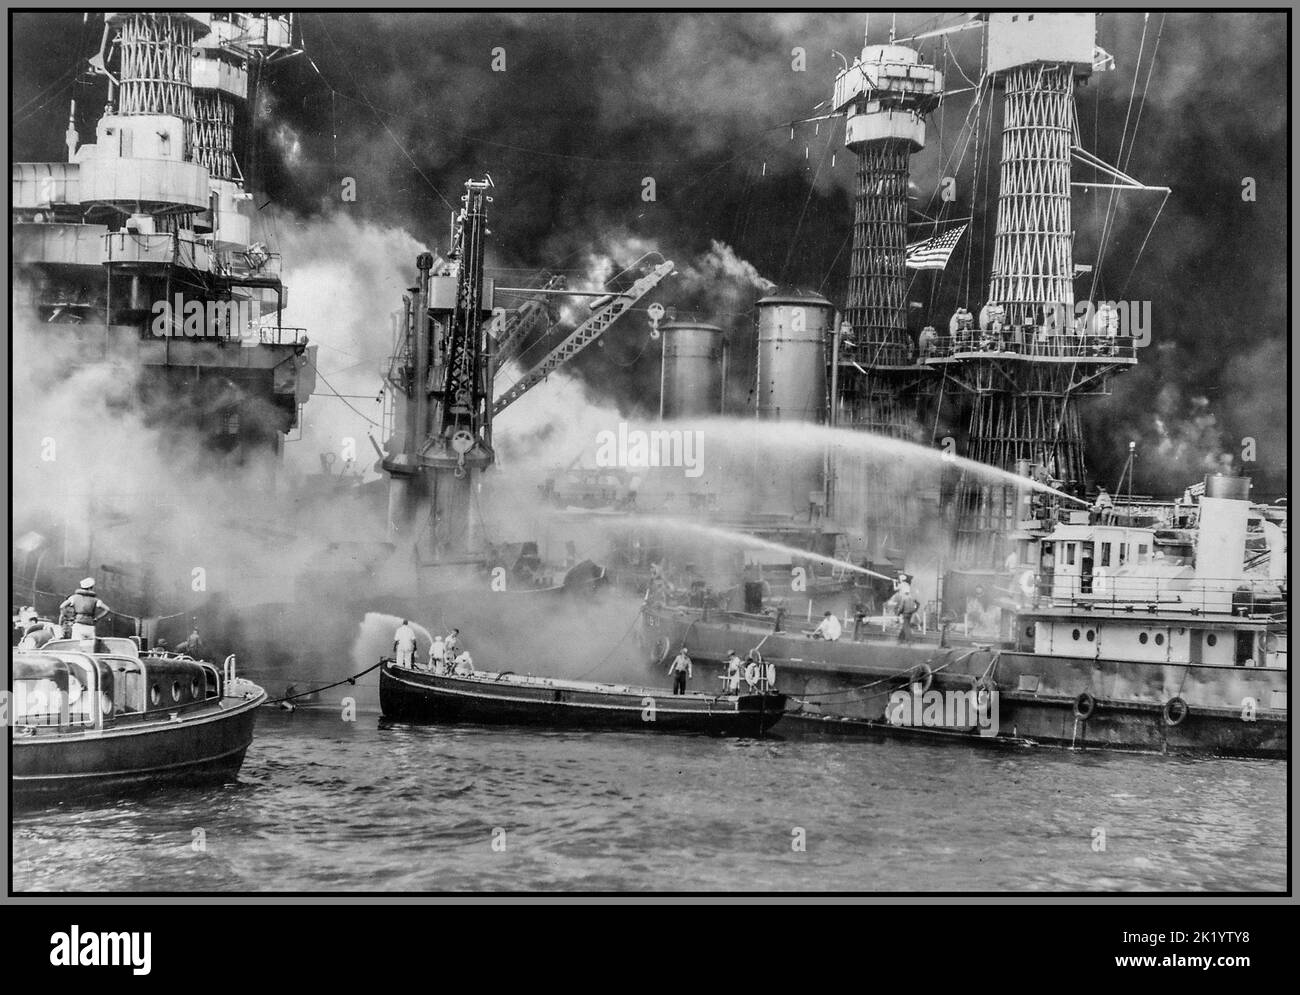 Pearl Harbor Ataque japonés, Pearl Harbor tomado por sorpresa, durante el ataque aéreo japonés. USS WEST VIRGINIA en llamas con frenéticos y dramáticos esfuerzos para extinguir las llamas. WW2 Japón América 7th de diciembre de 1941 El inicio de la guerra en el Pacífico Foto de stock